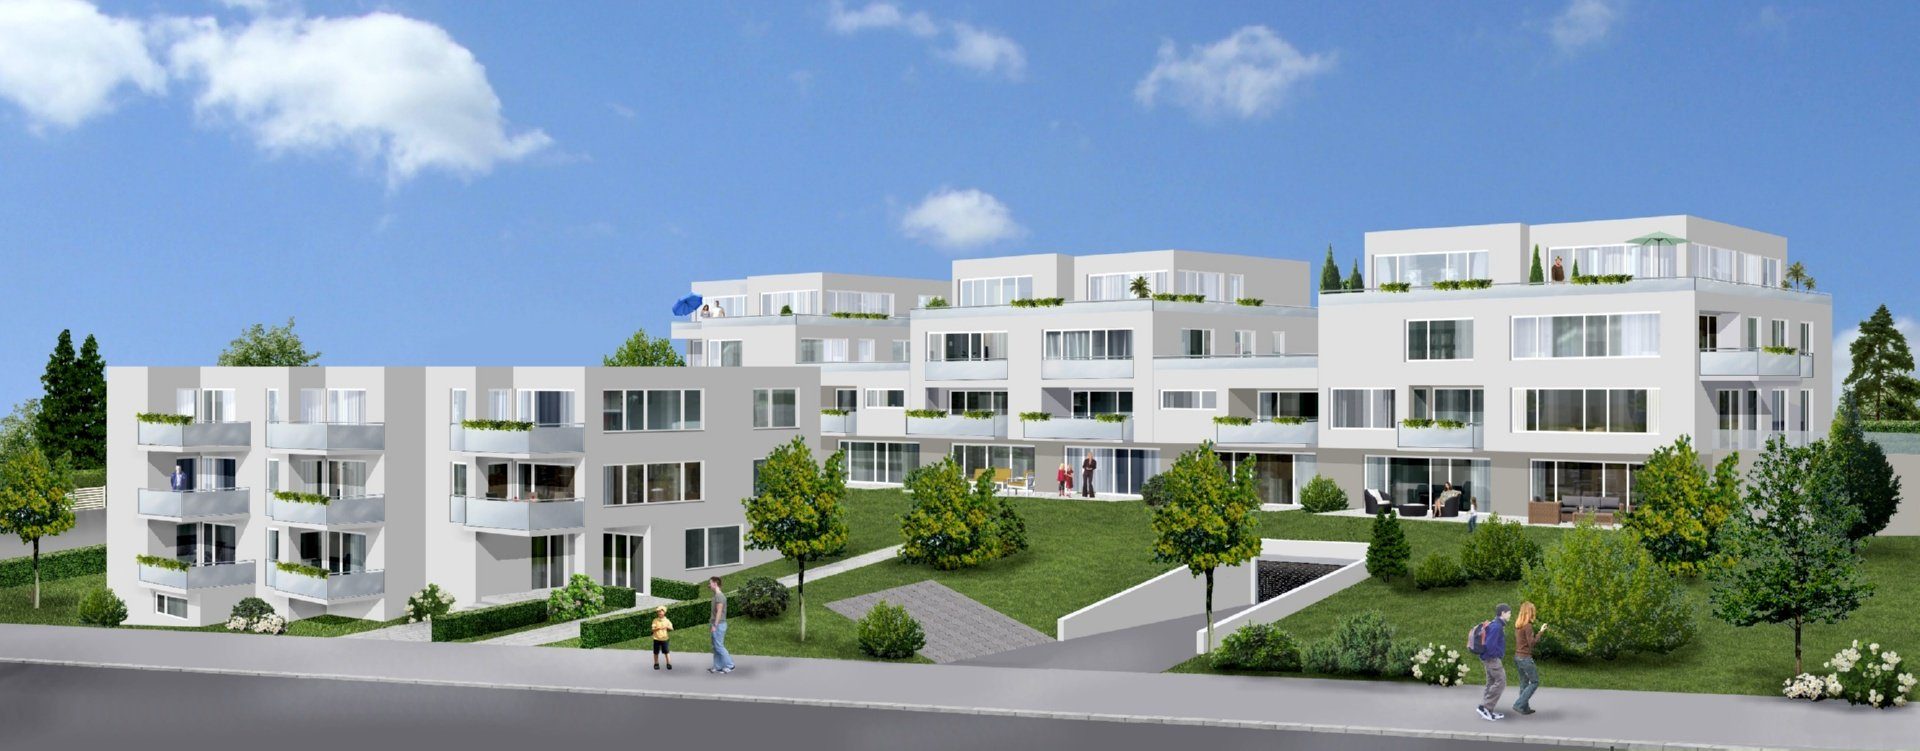 Volksbank Trier Immobilien GmbH - Immobilienangebot - Trier - Penthouse - Ihr Logenplatz über Trier